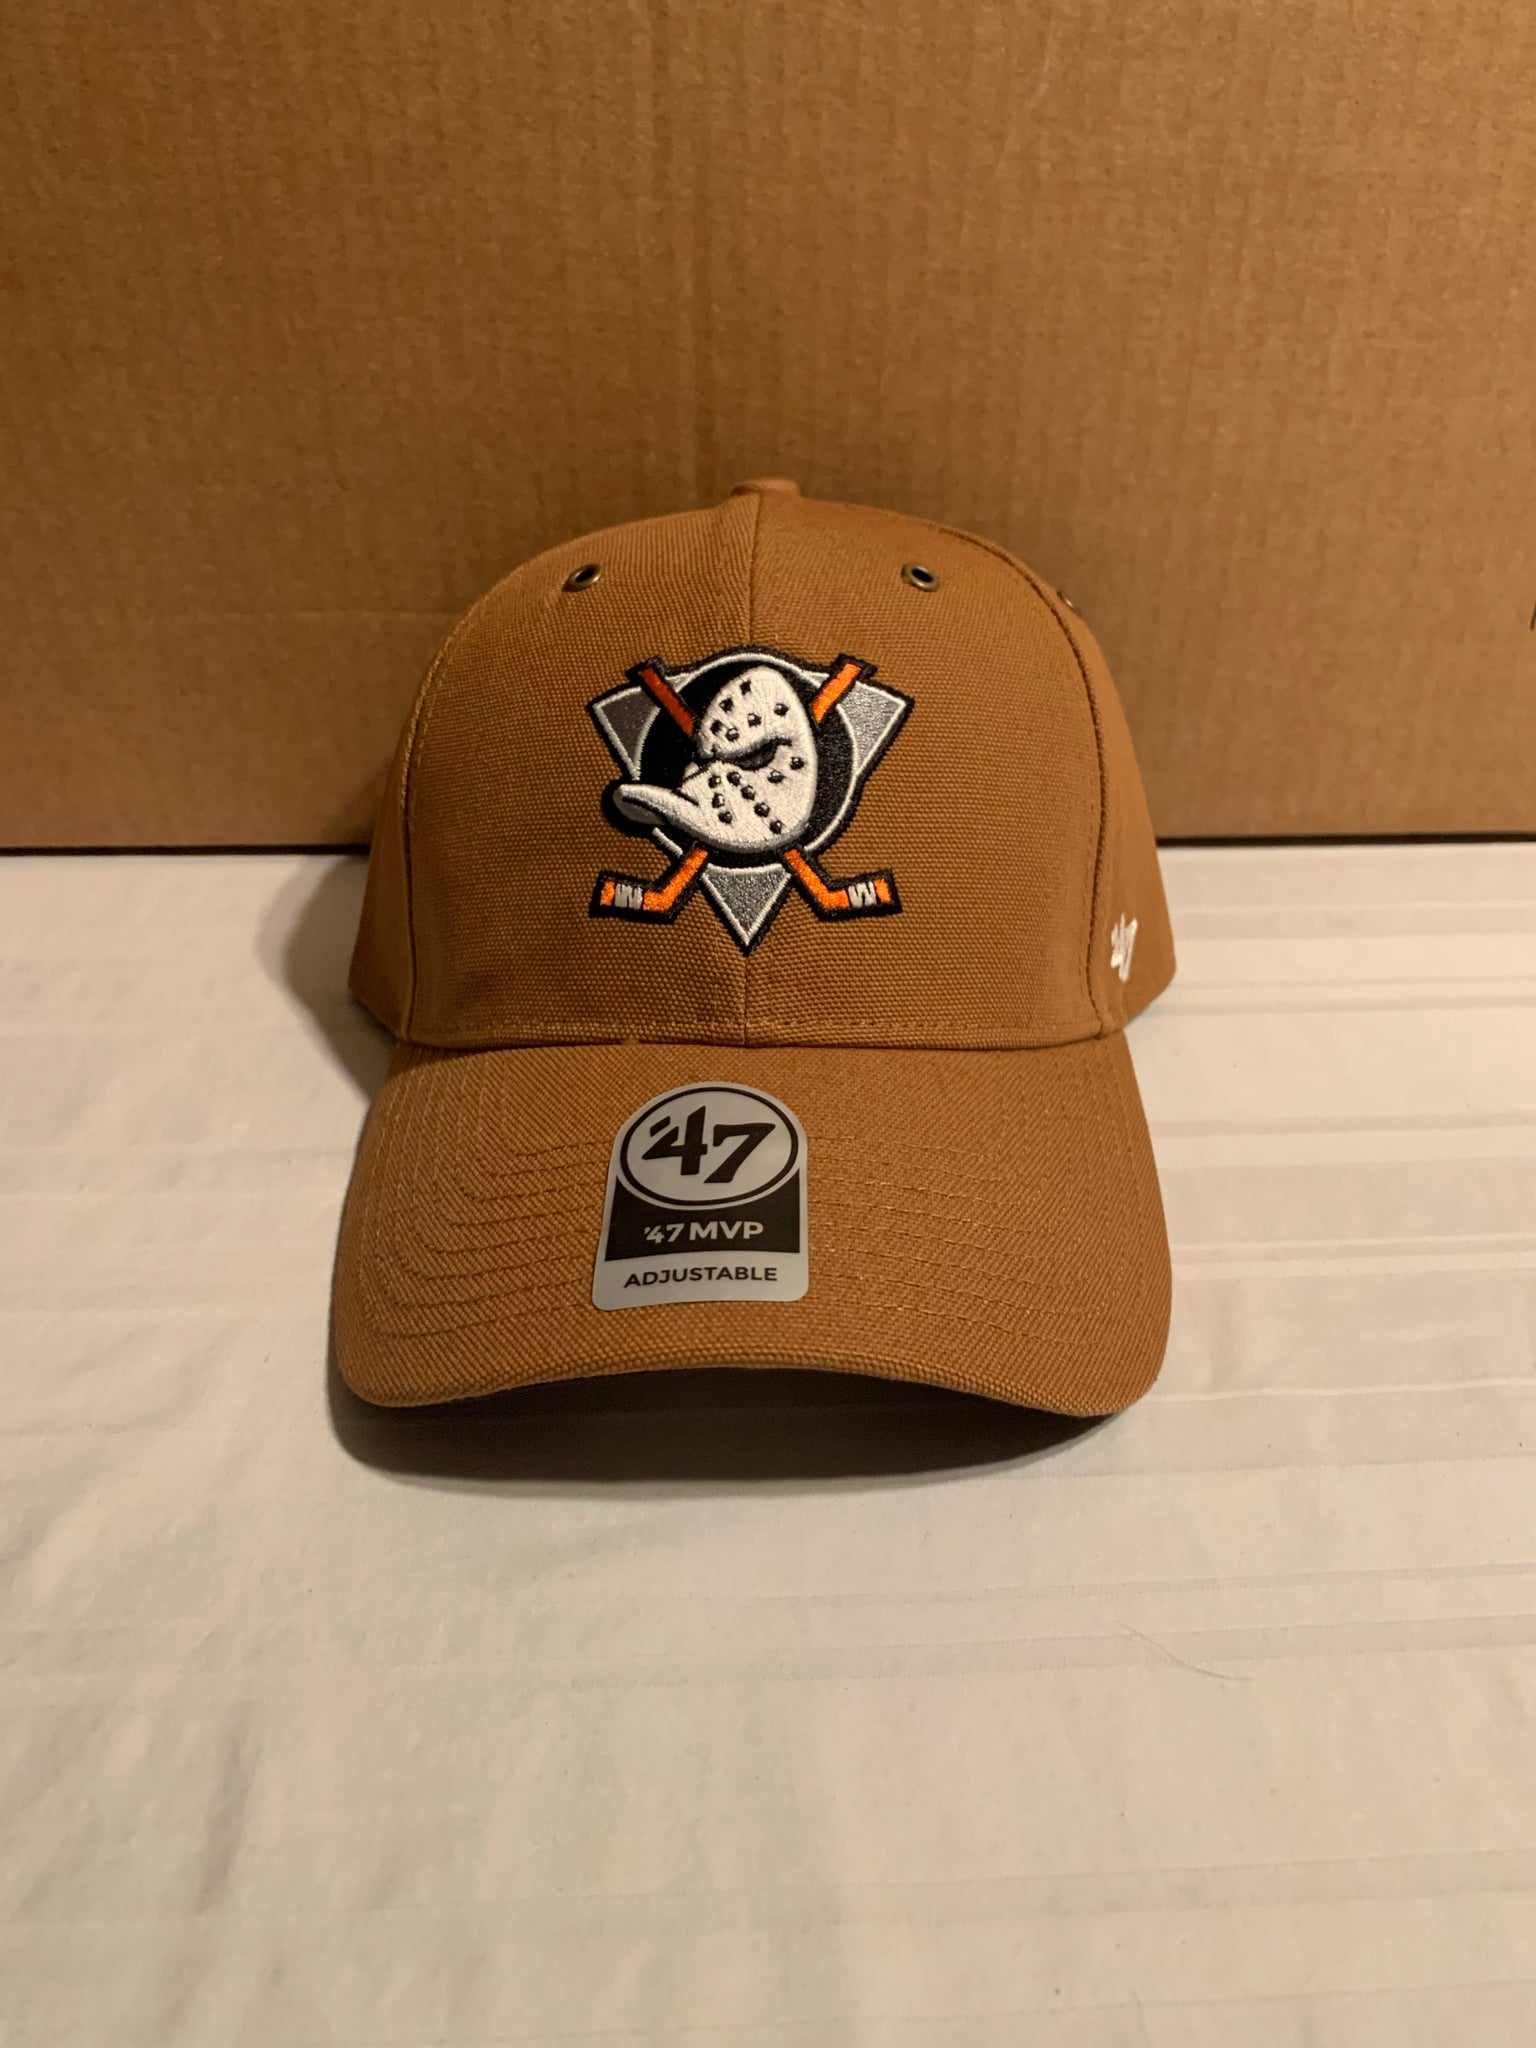 Anaheim Ducks '47 Clean Up Adjustable Hat - Orange